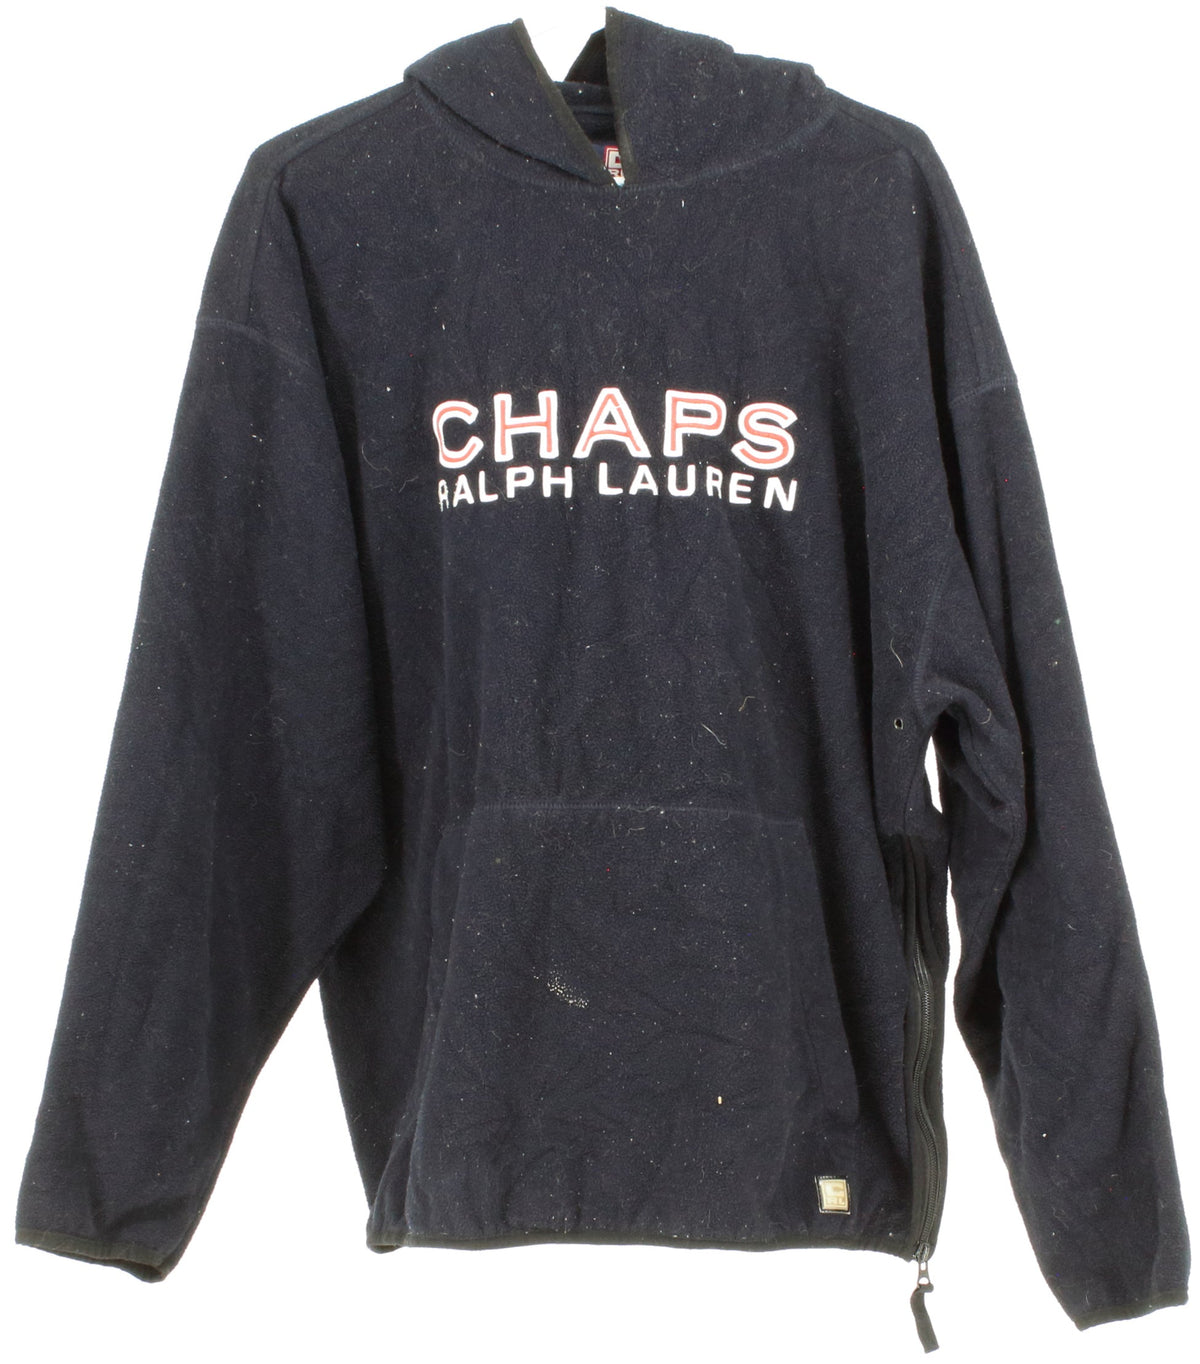 Chaps Ralph Lauren Navy Blue Hooded Fleece